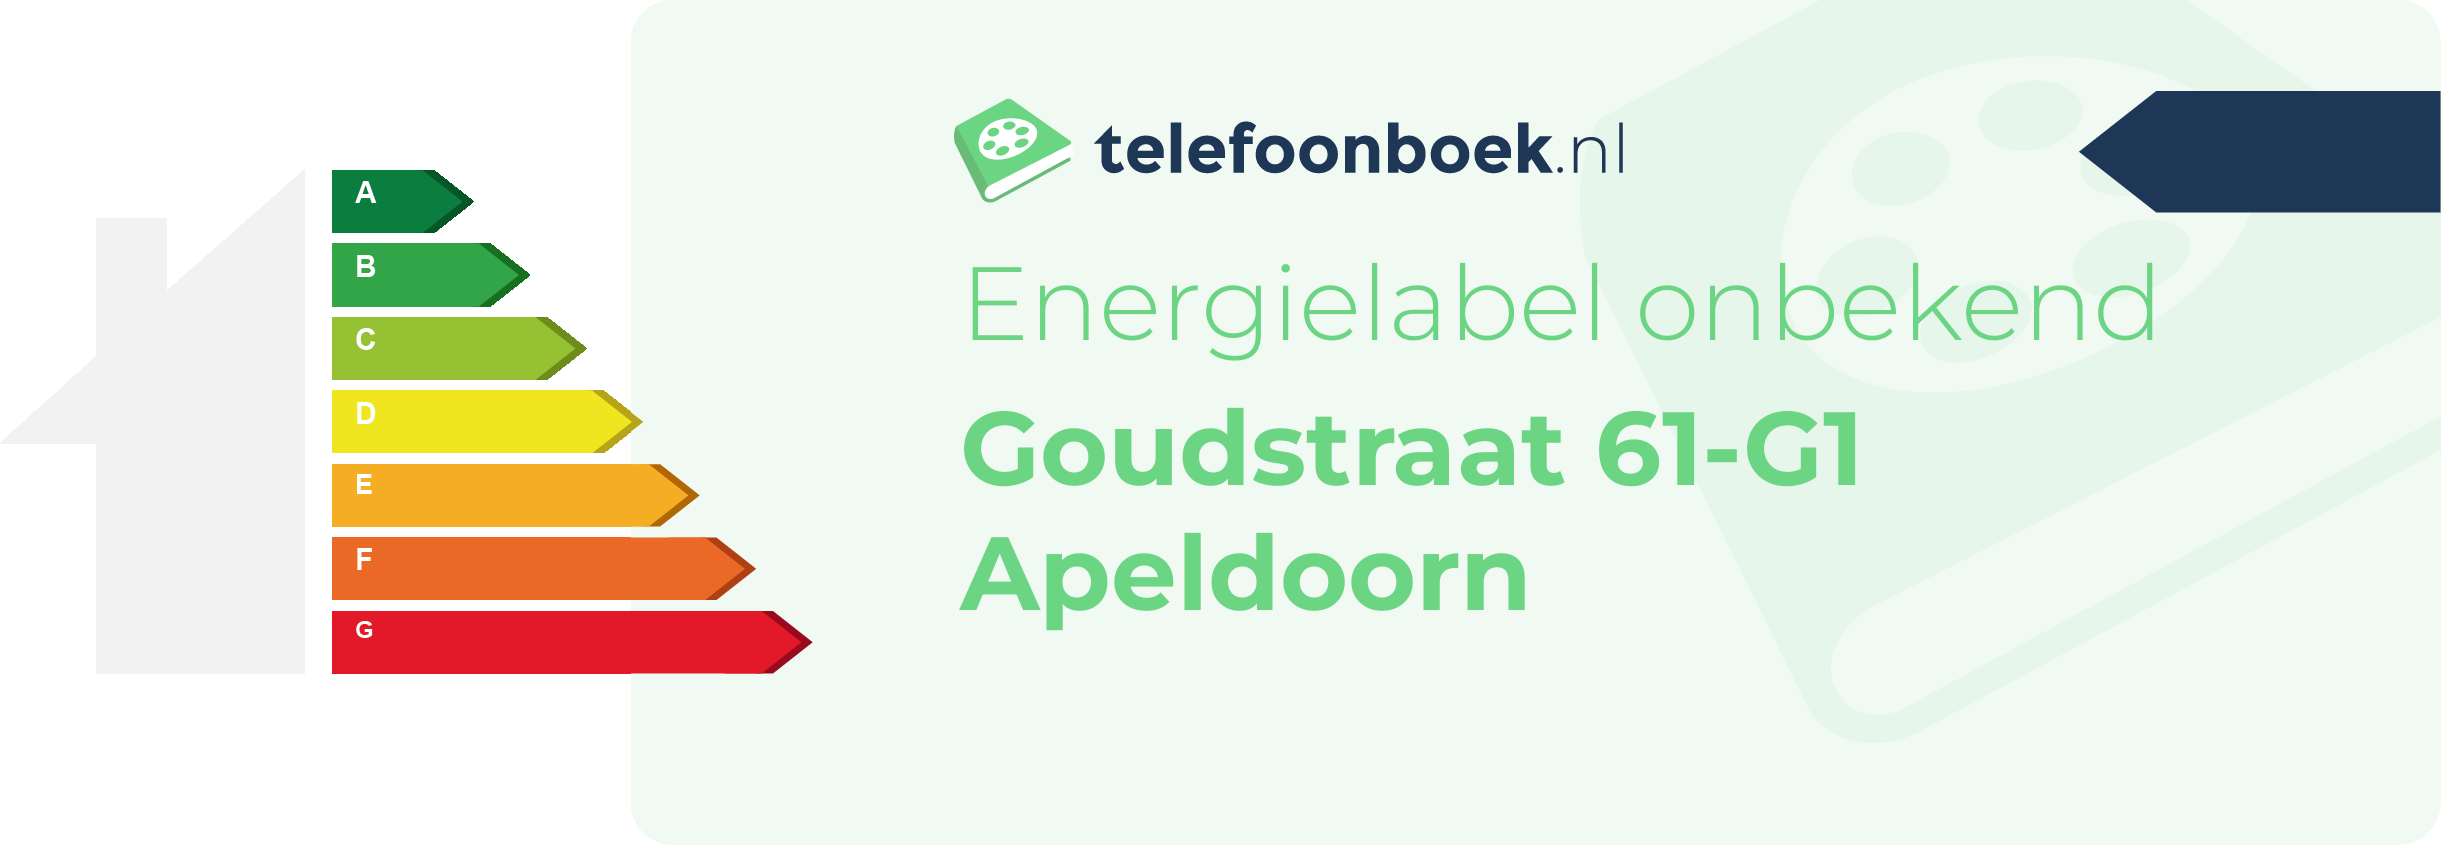 Energielabel Goudstraat 61-G1 Apeldoorn